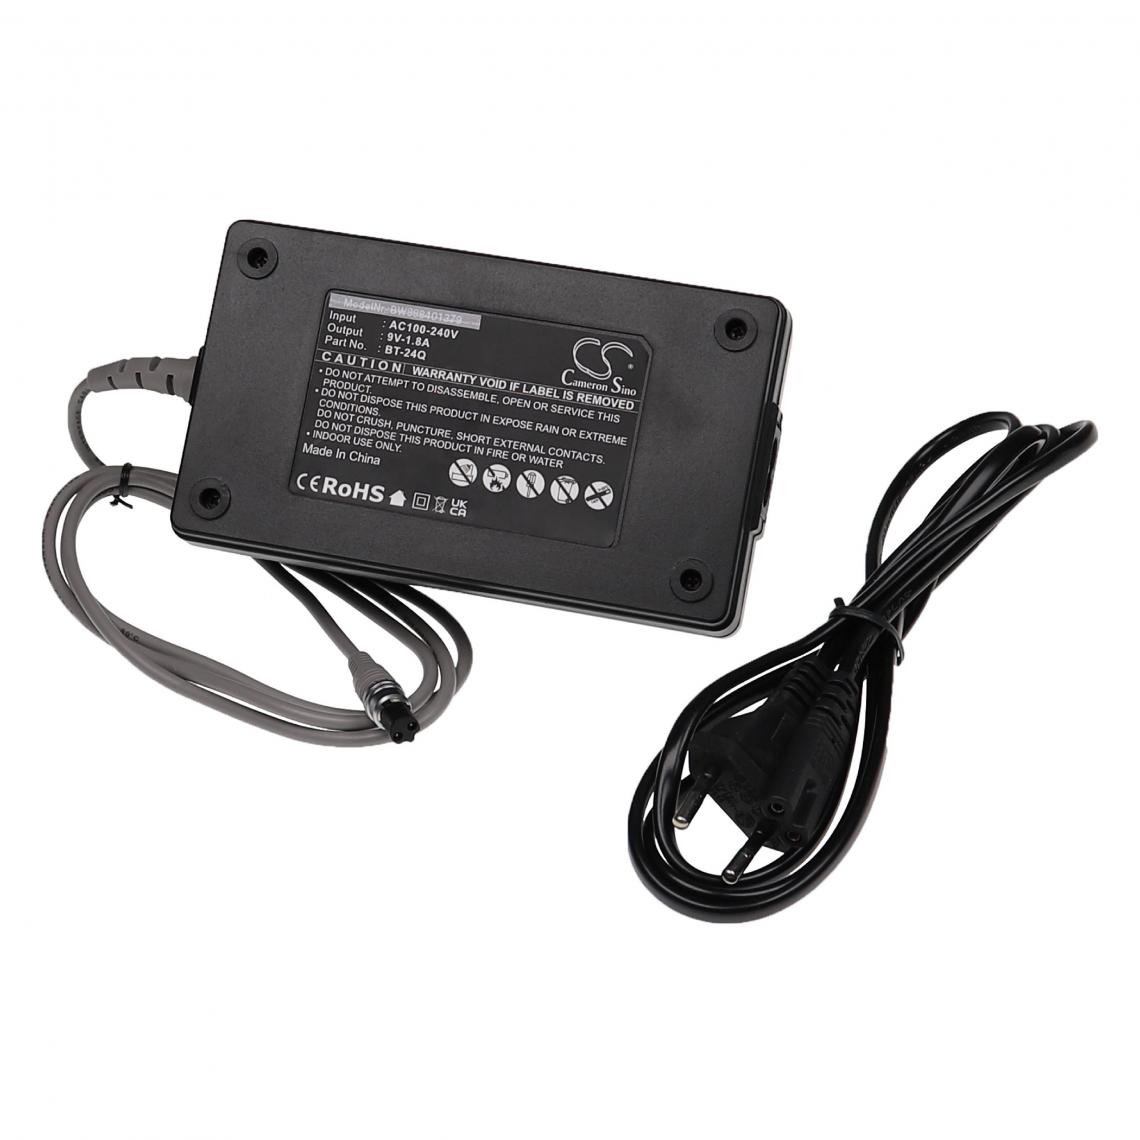 Vhbw - vhbw Chargeur compatible avec Topcon GTS-303D appareil de mesure - Noir, plastique - Piles rechargeables